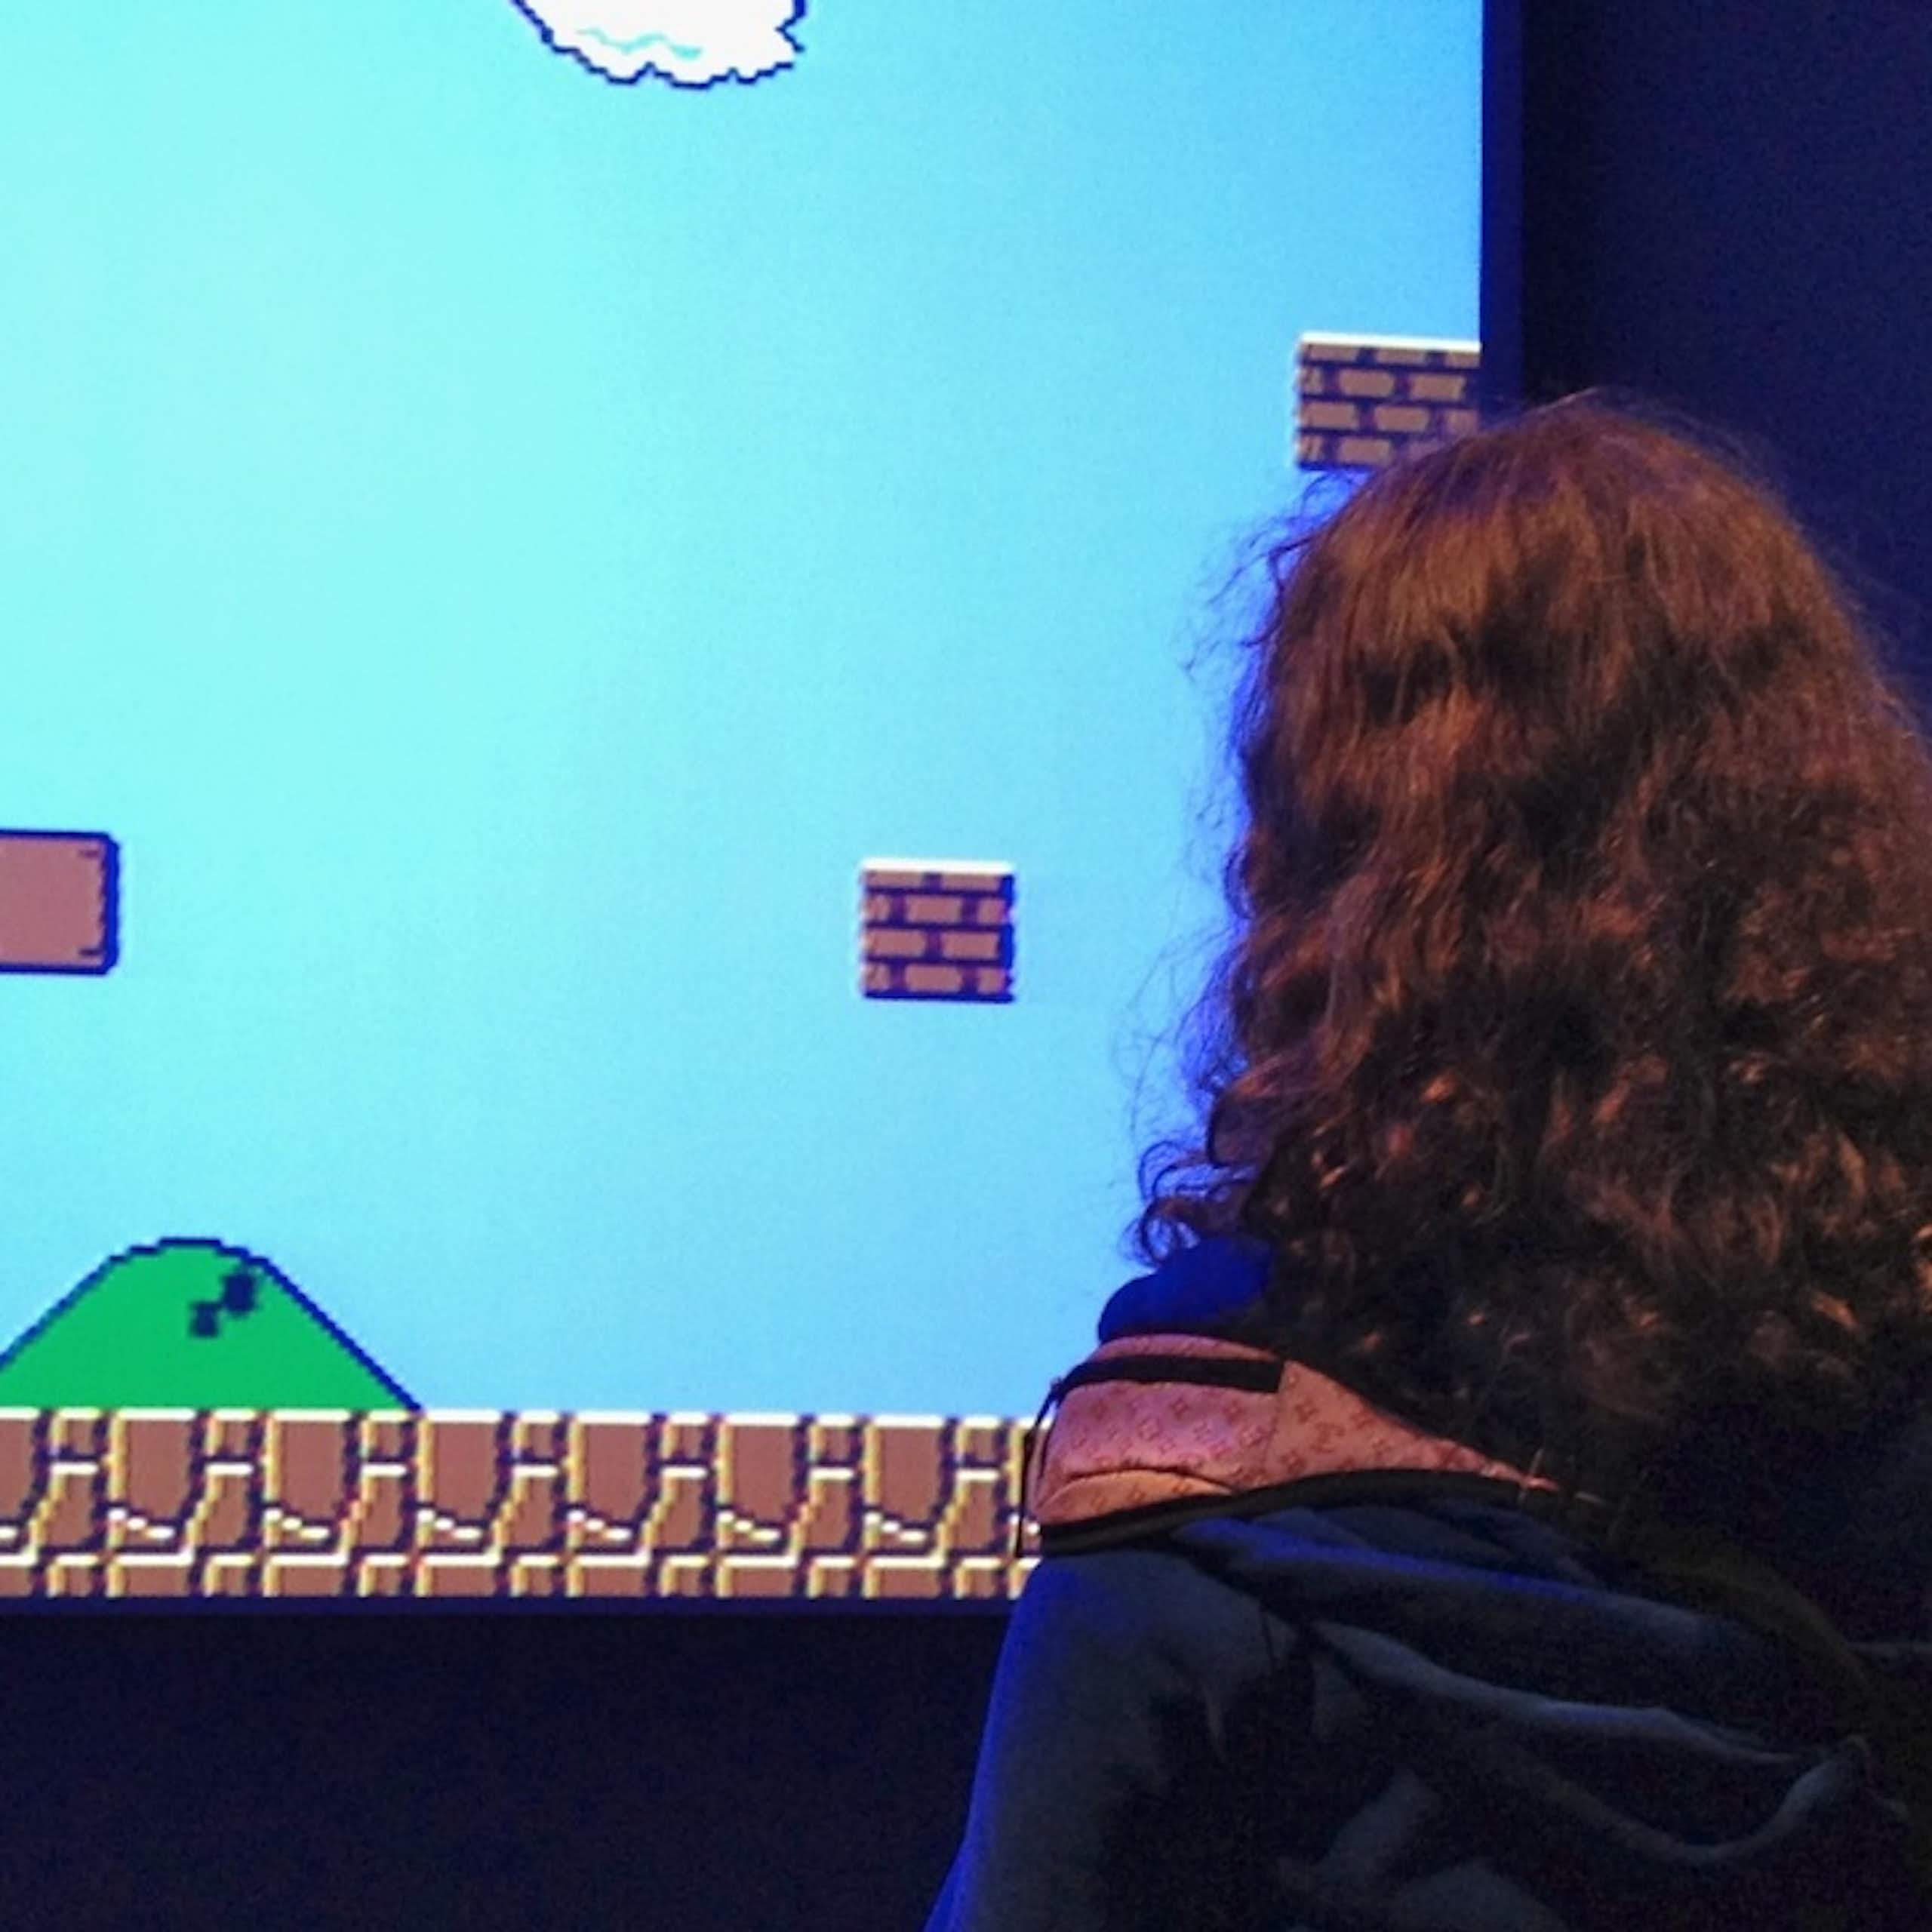 deux personnages jouent à un jeu vidéo sur un écran